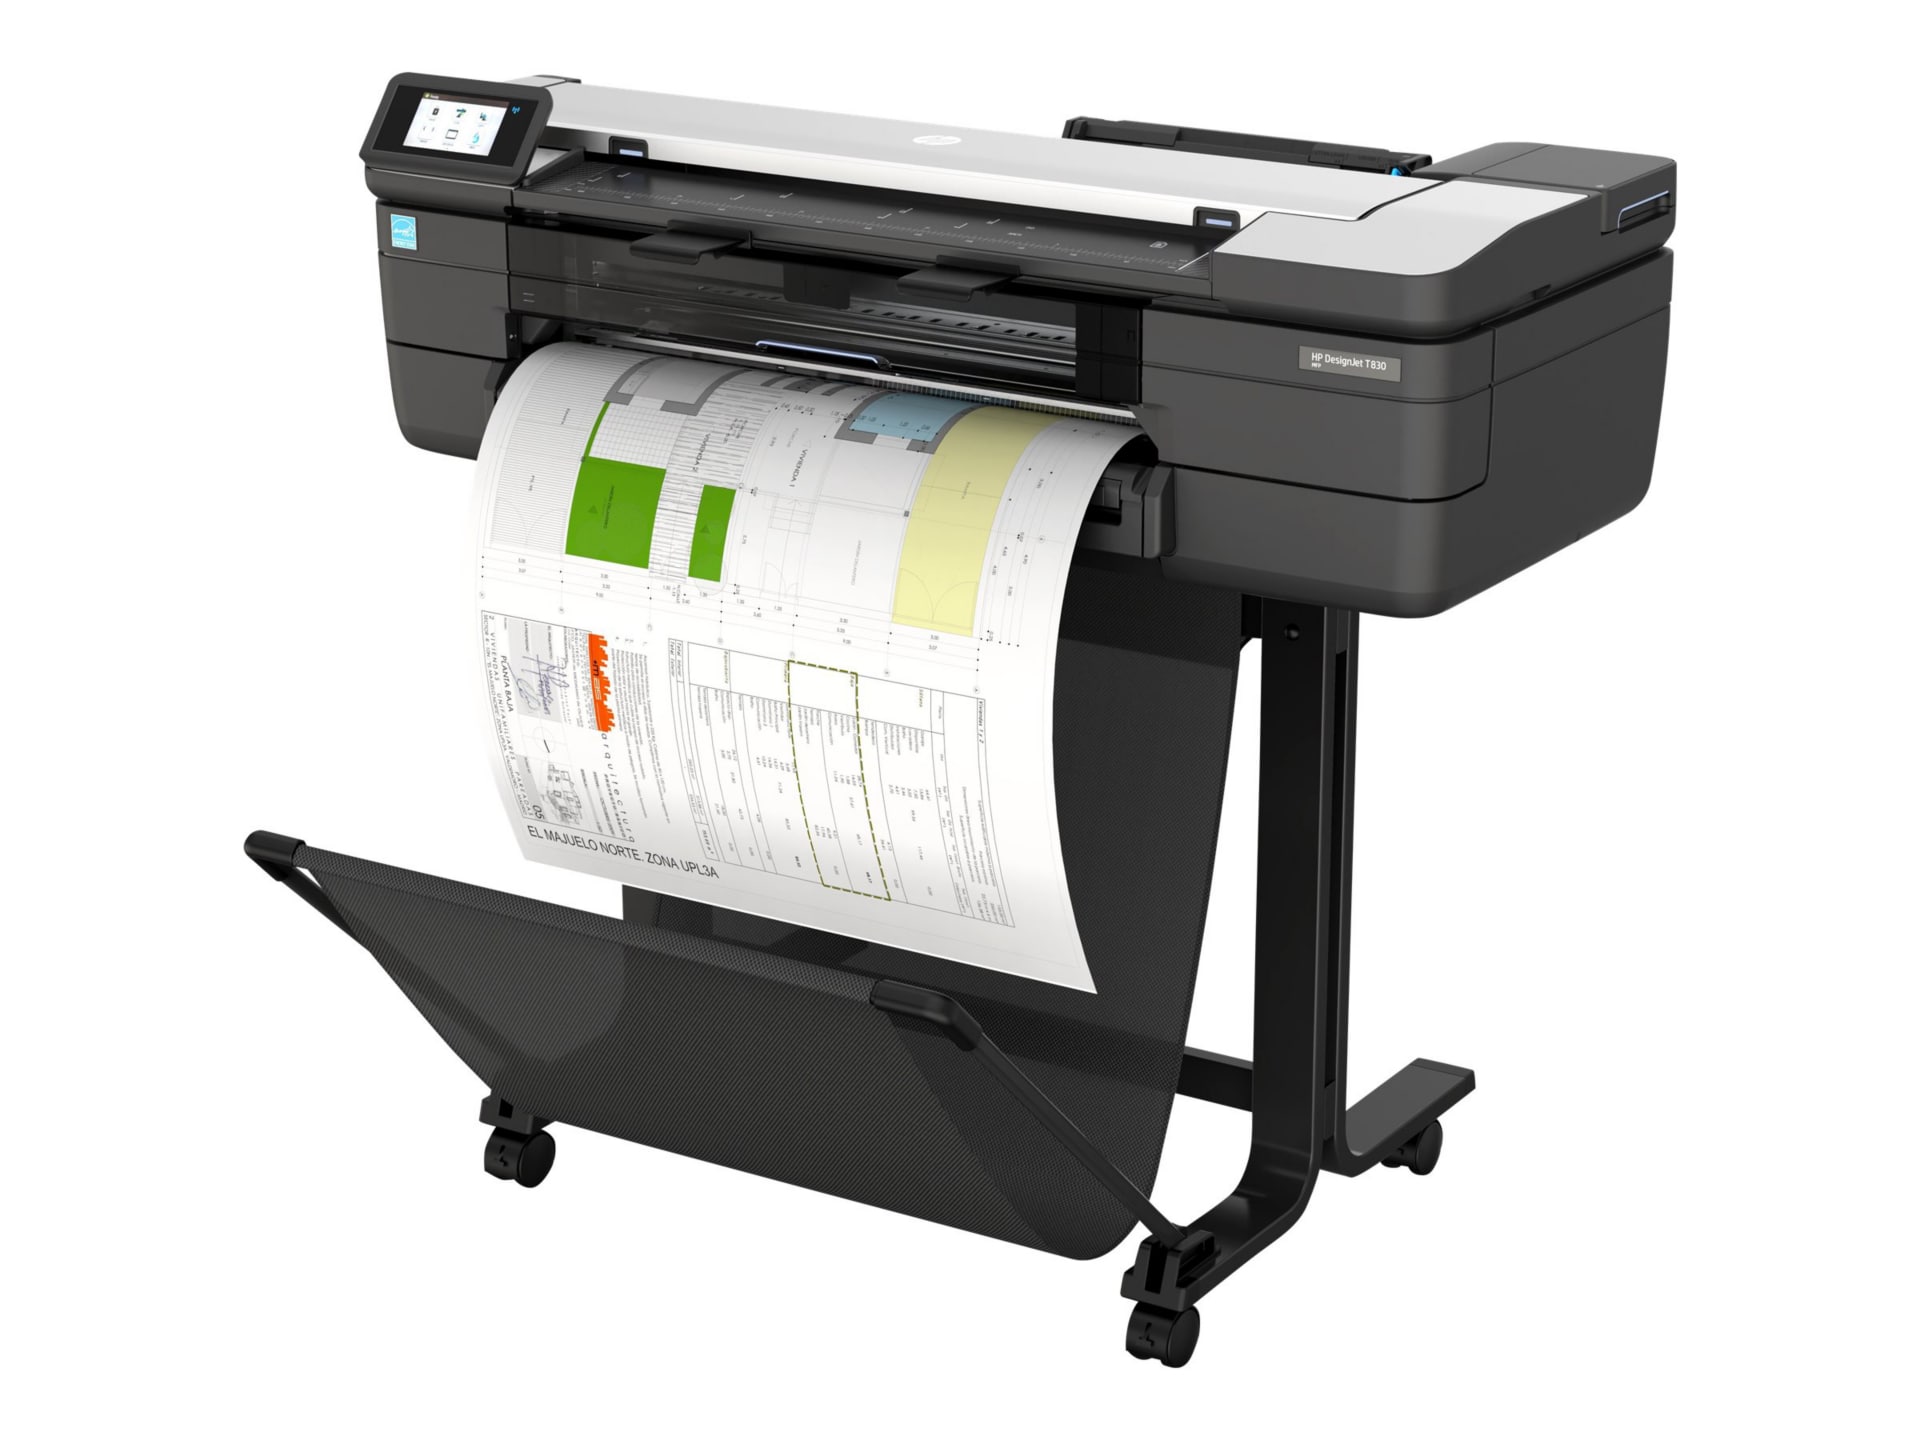 HP Designjet T830 Inkjet Large Format Printer - Includes Printer, Copier,  Scanner - 24